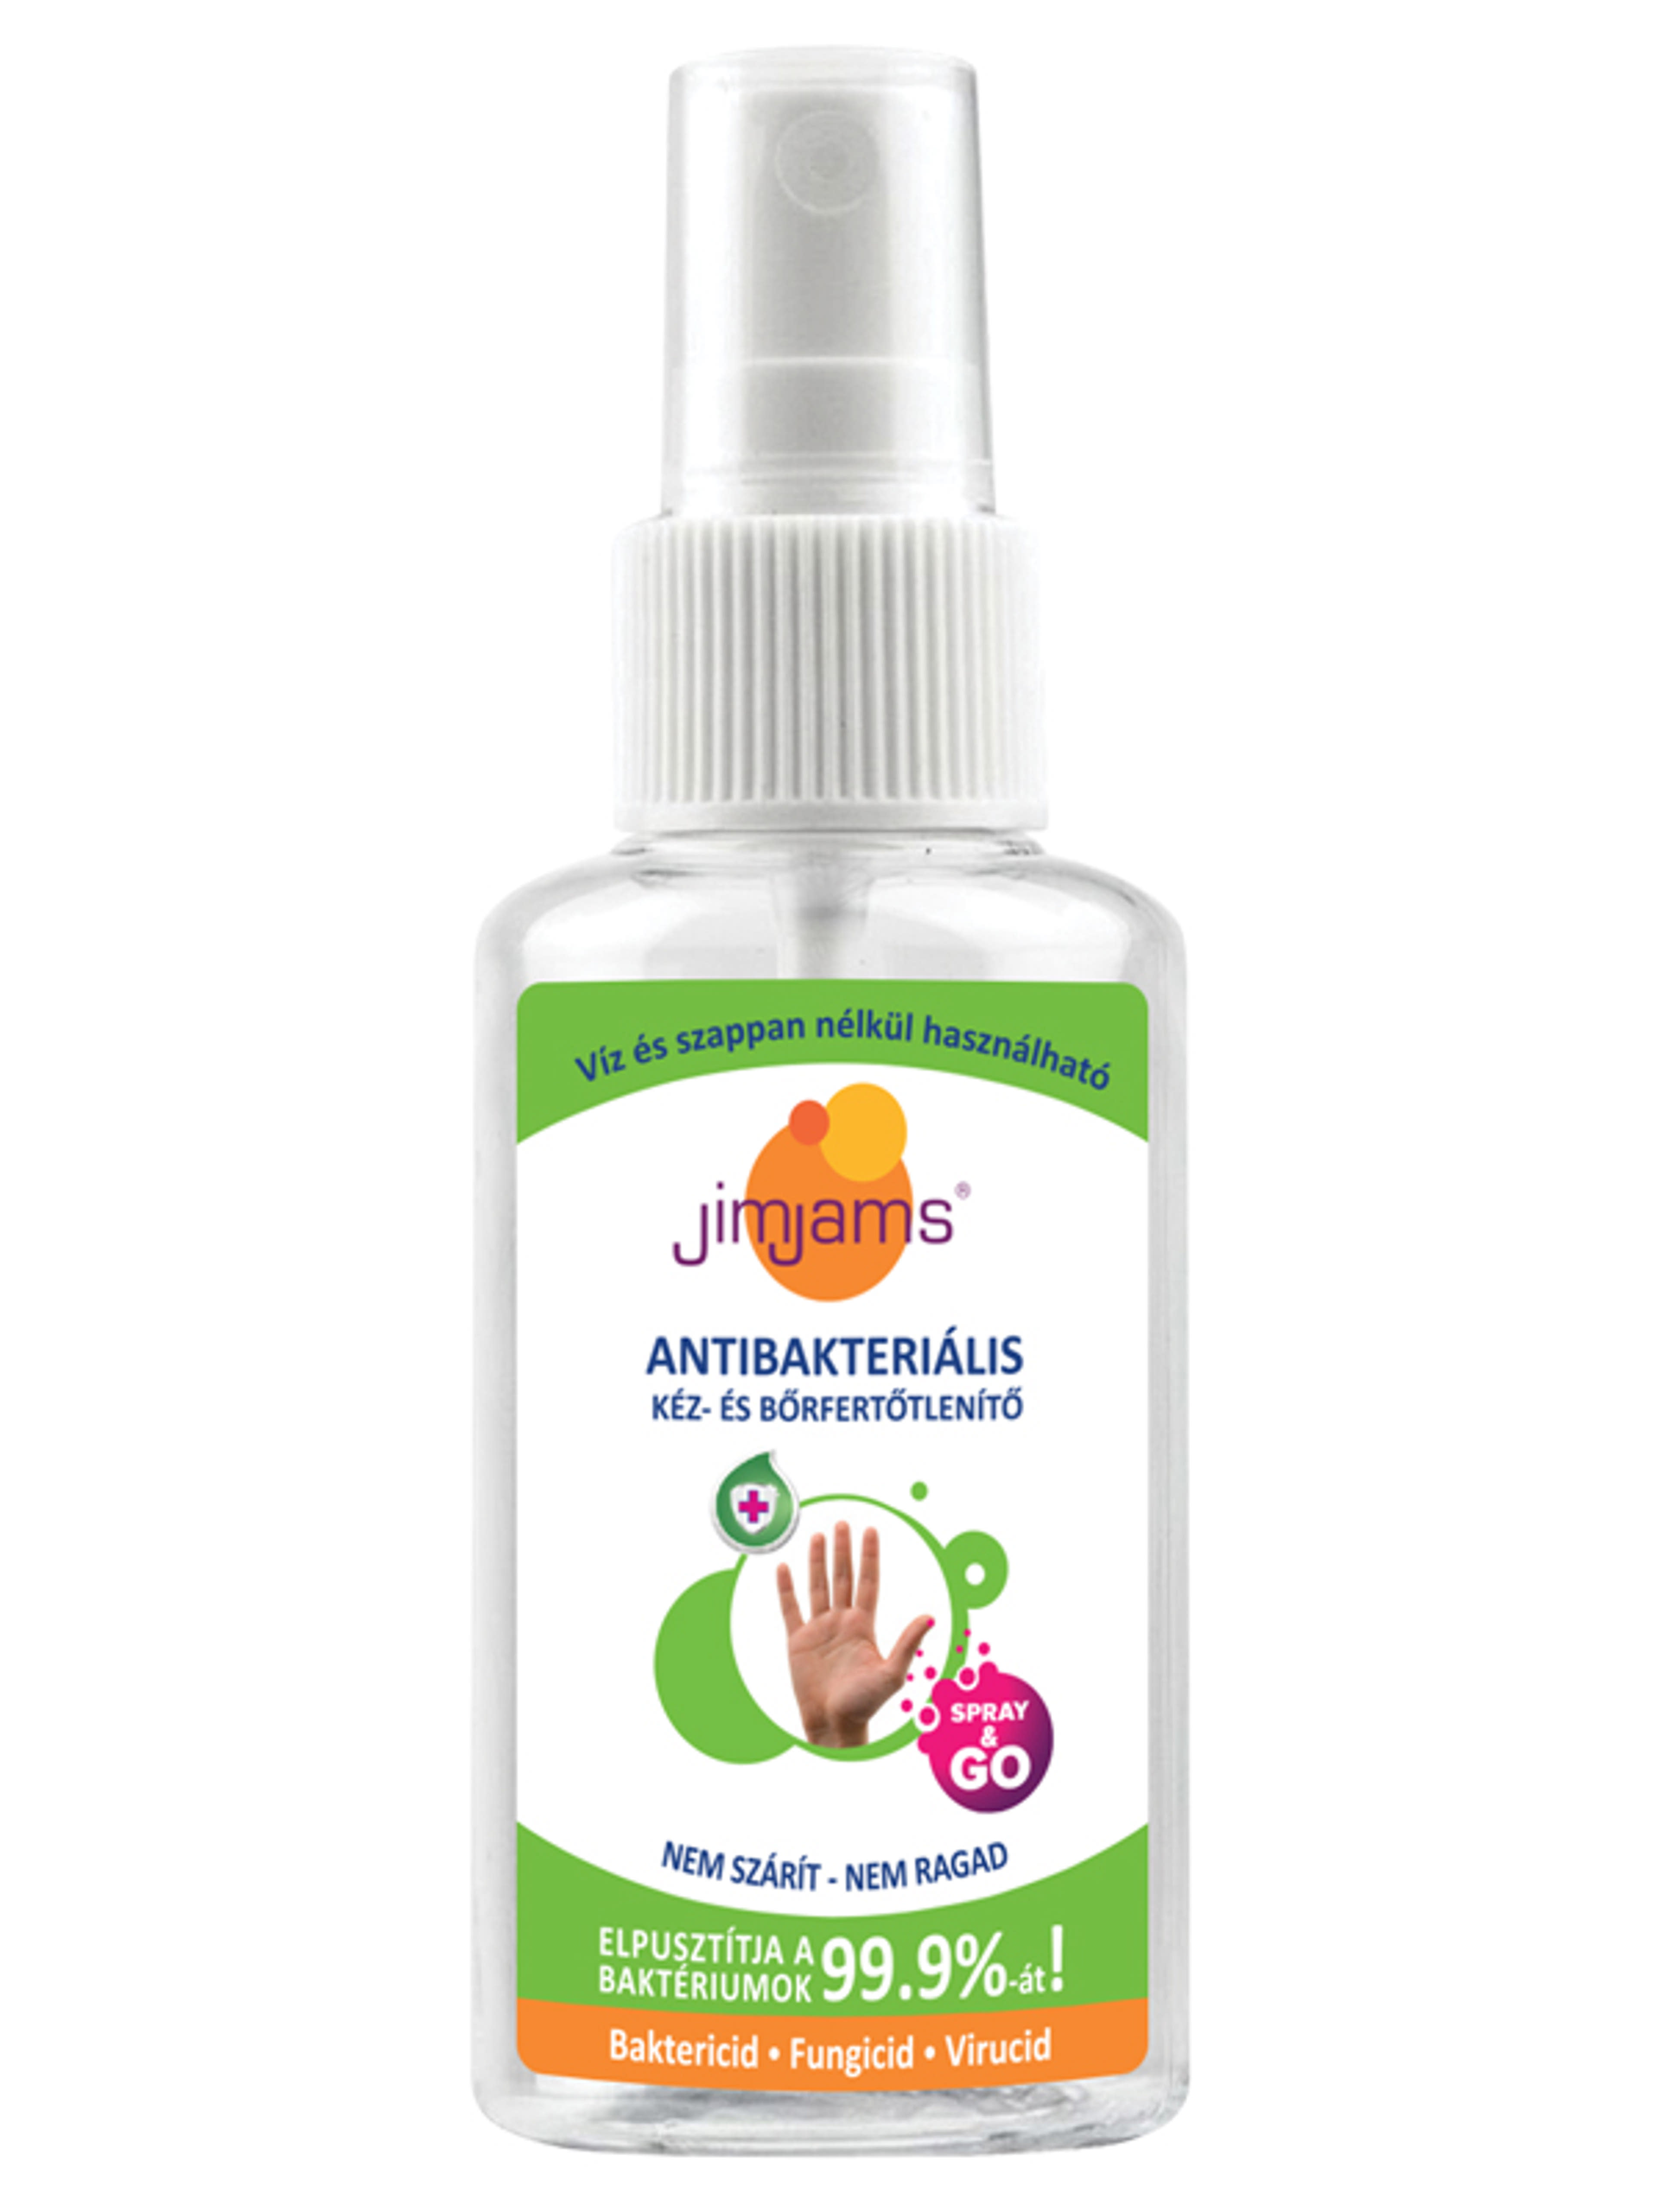 JimJams antibakteriális kéz és börfertőtlenítő Spray - 50 ml